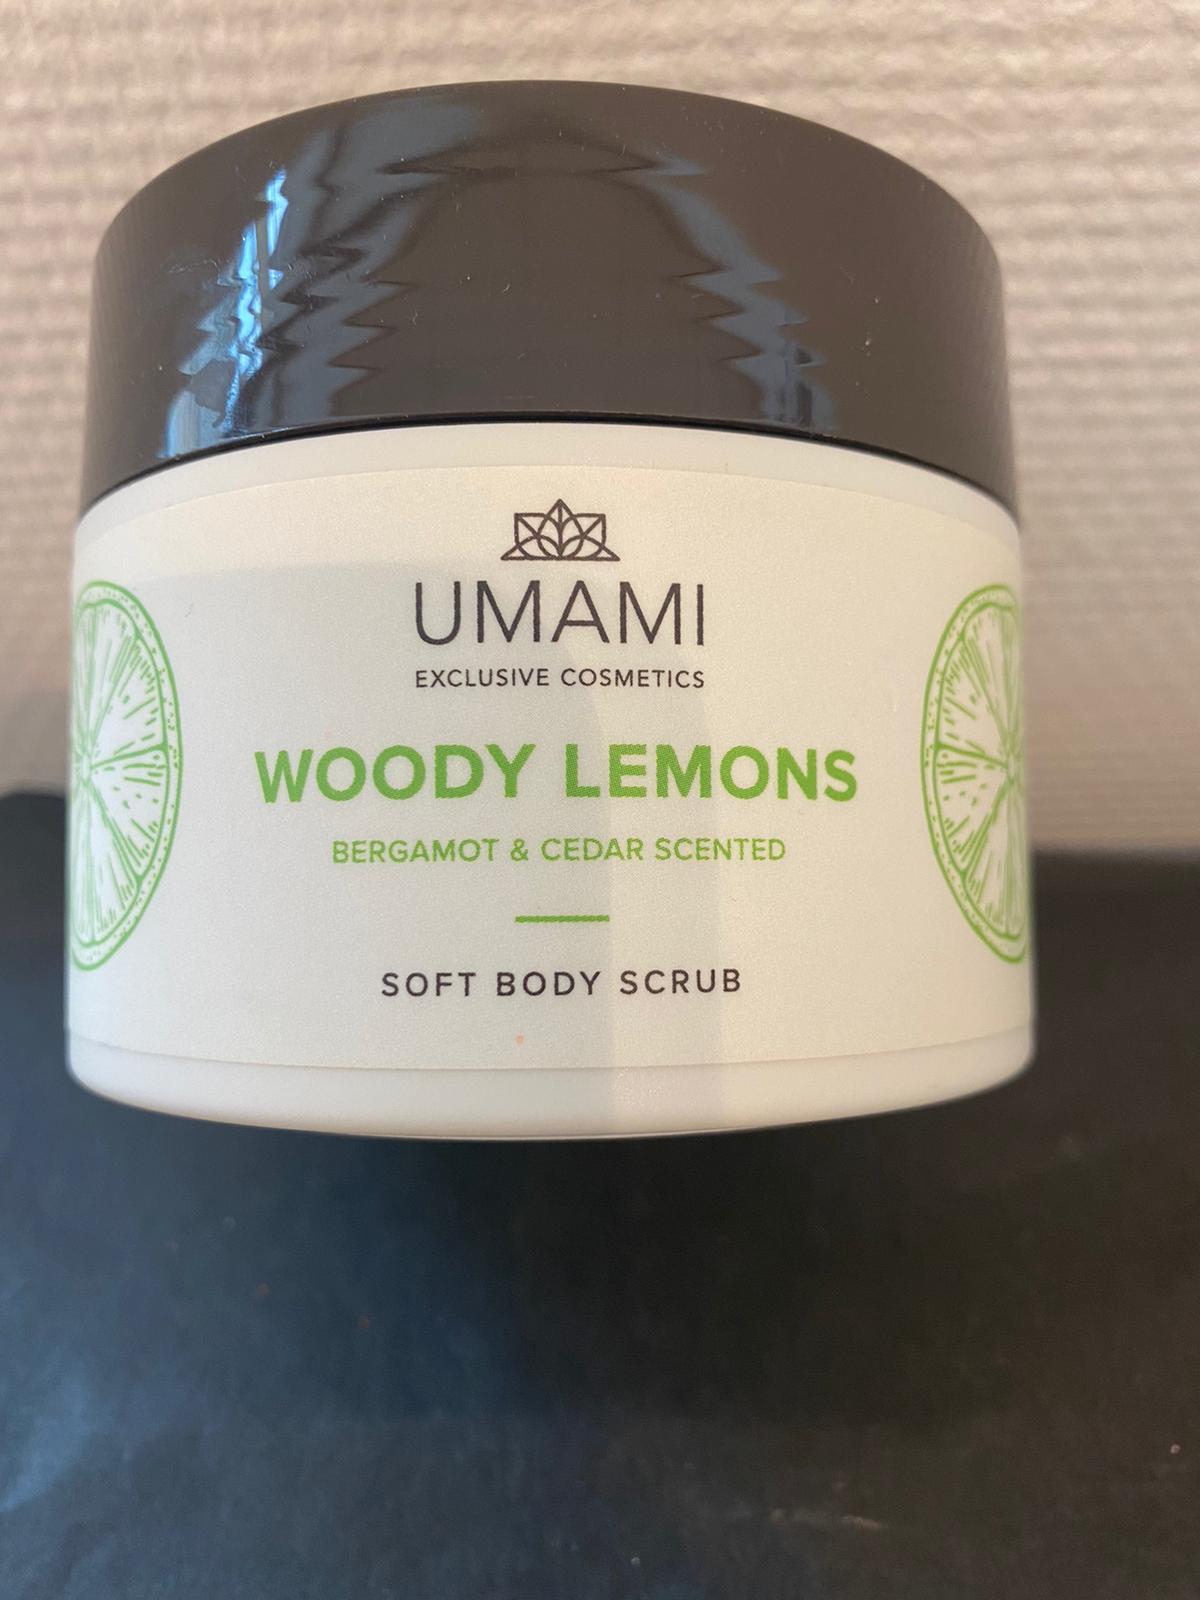 Umami woody lemons body scrub